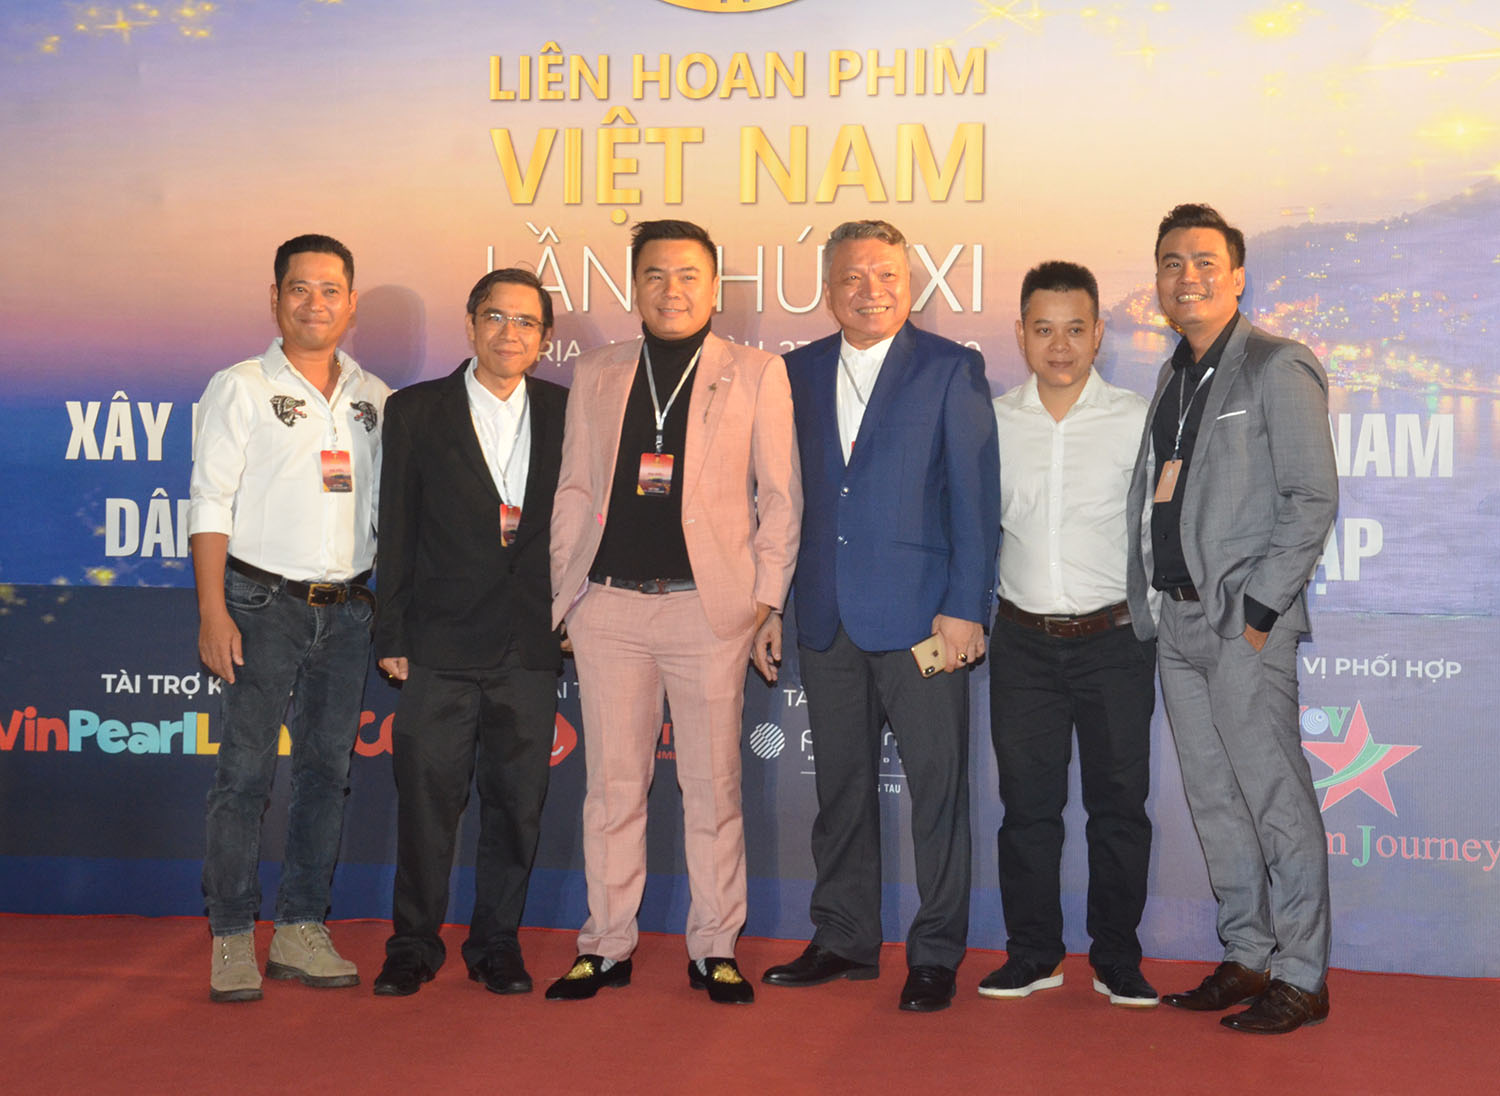 Đoàn làm phim Cua lại vợ bầu. Bộ phim Việt có doanh thu nội địa cao nhất từ trước đến nay với 190 tỷ đồng.